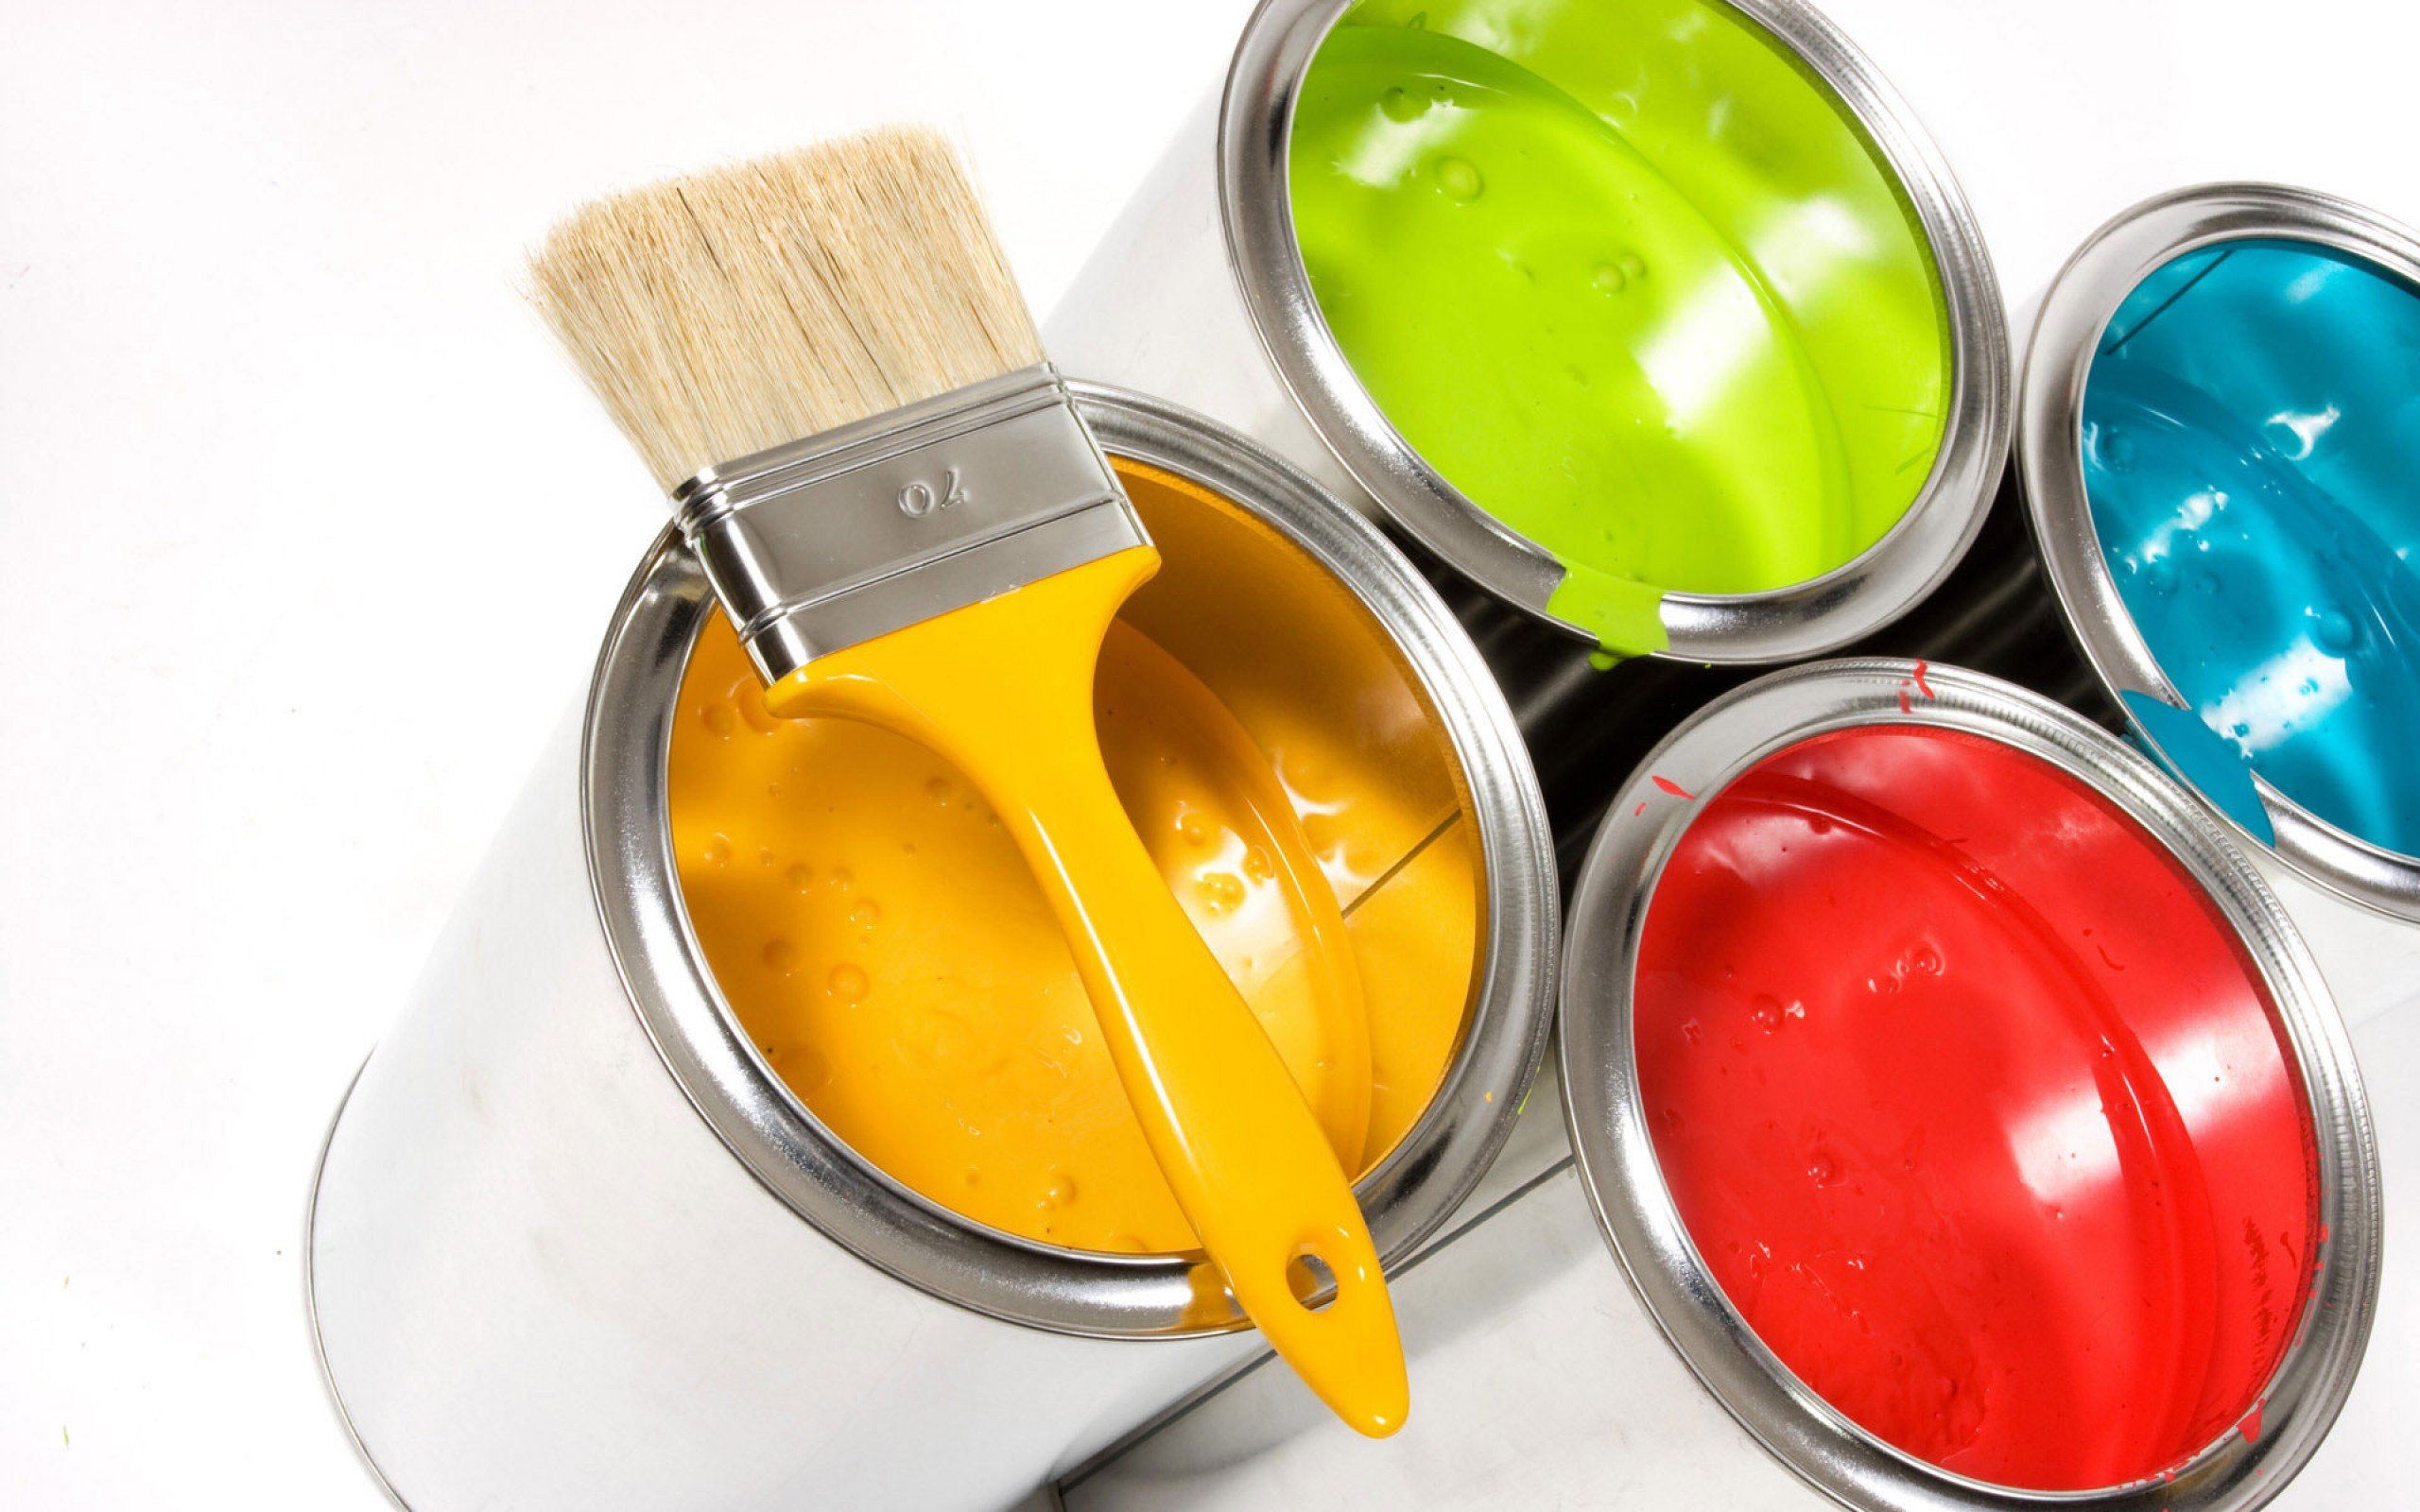 17 Ideias de Cores de Tintas Para Pintar Casas por Fora